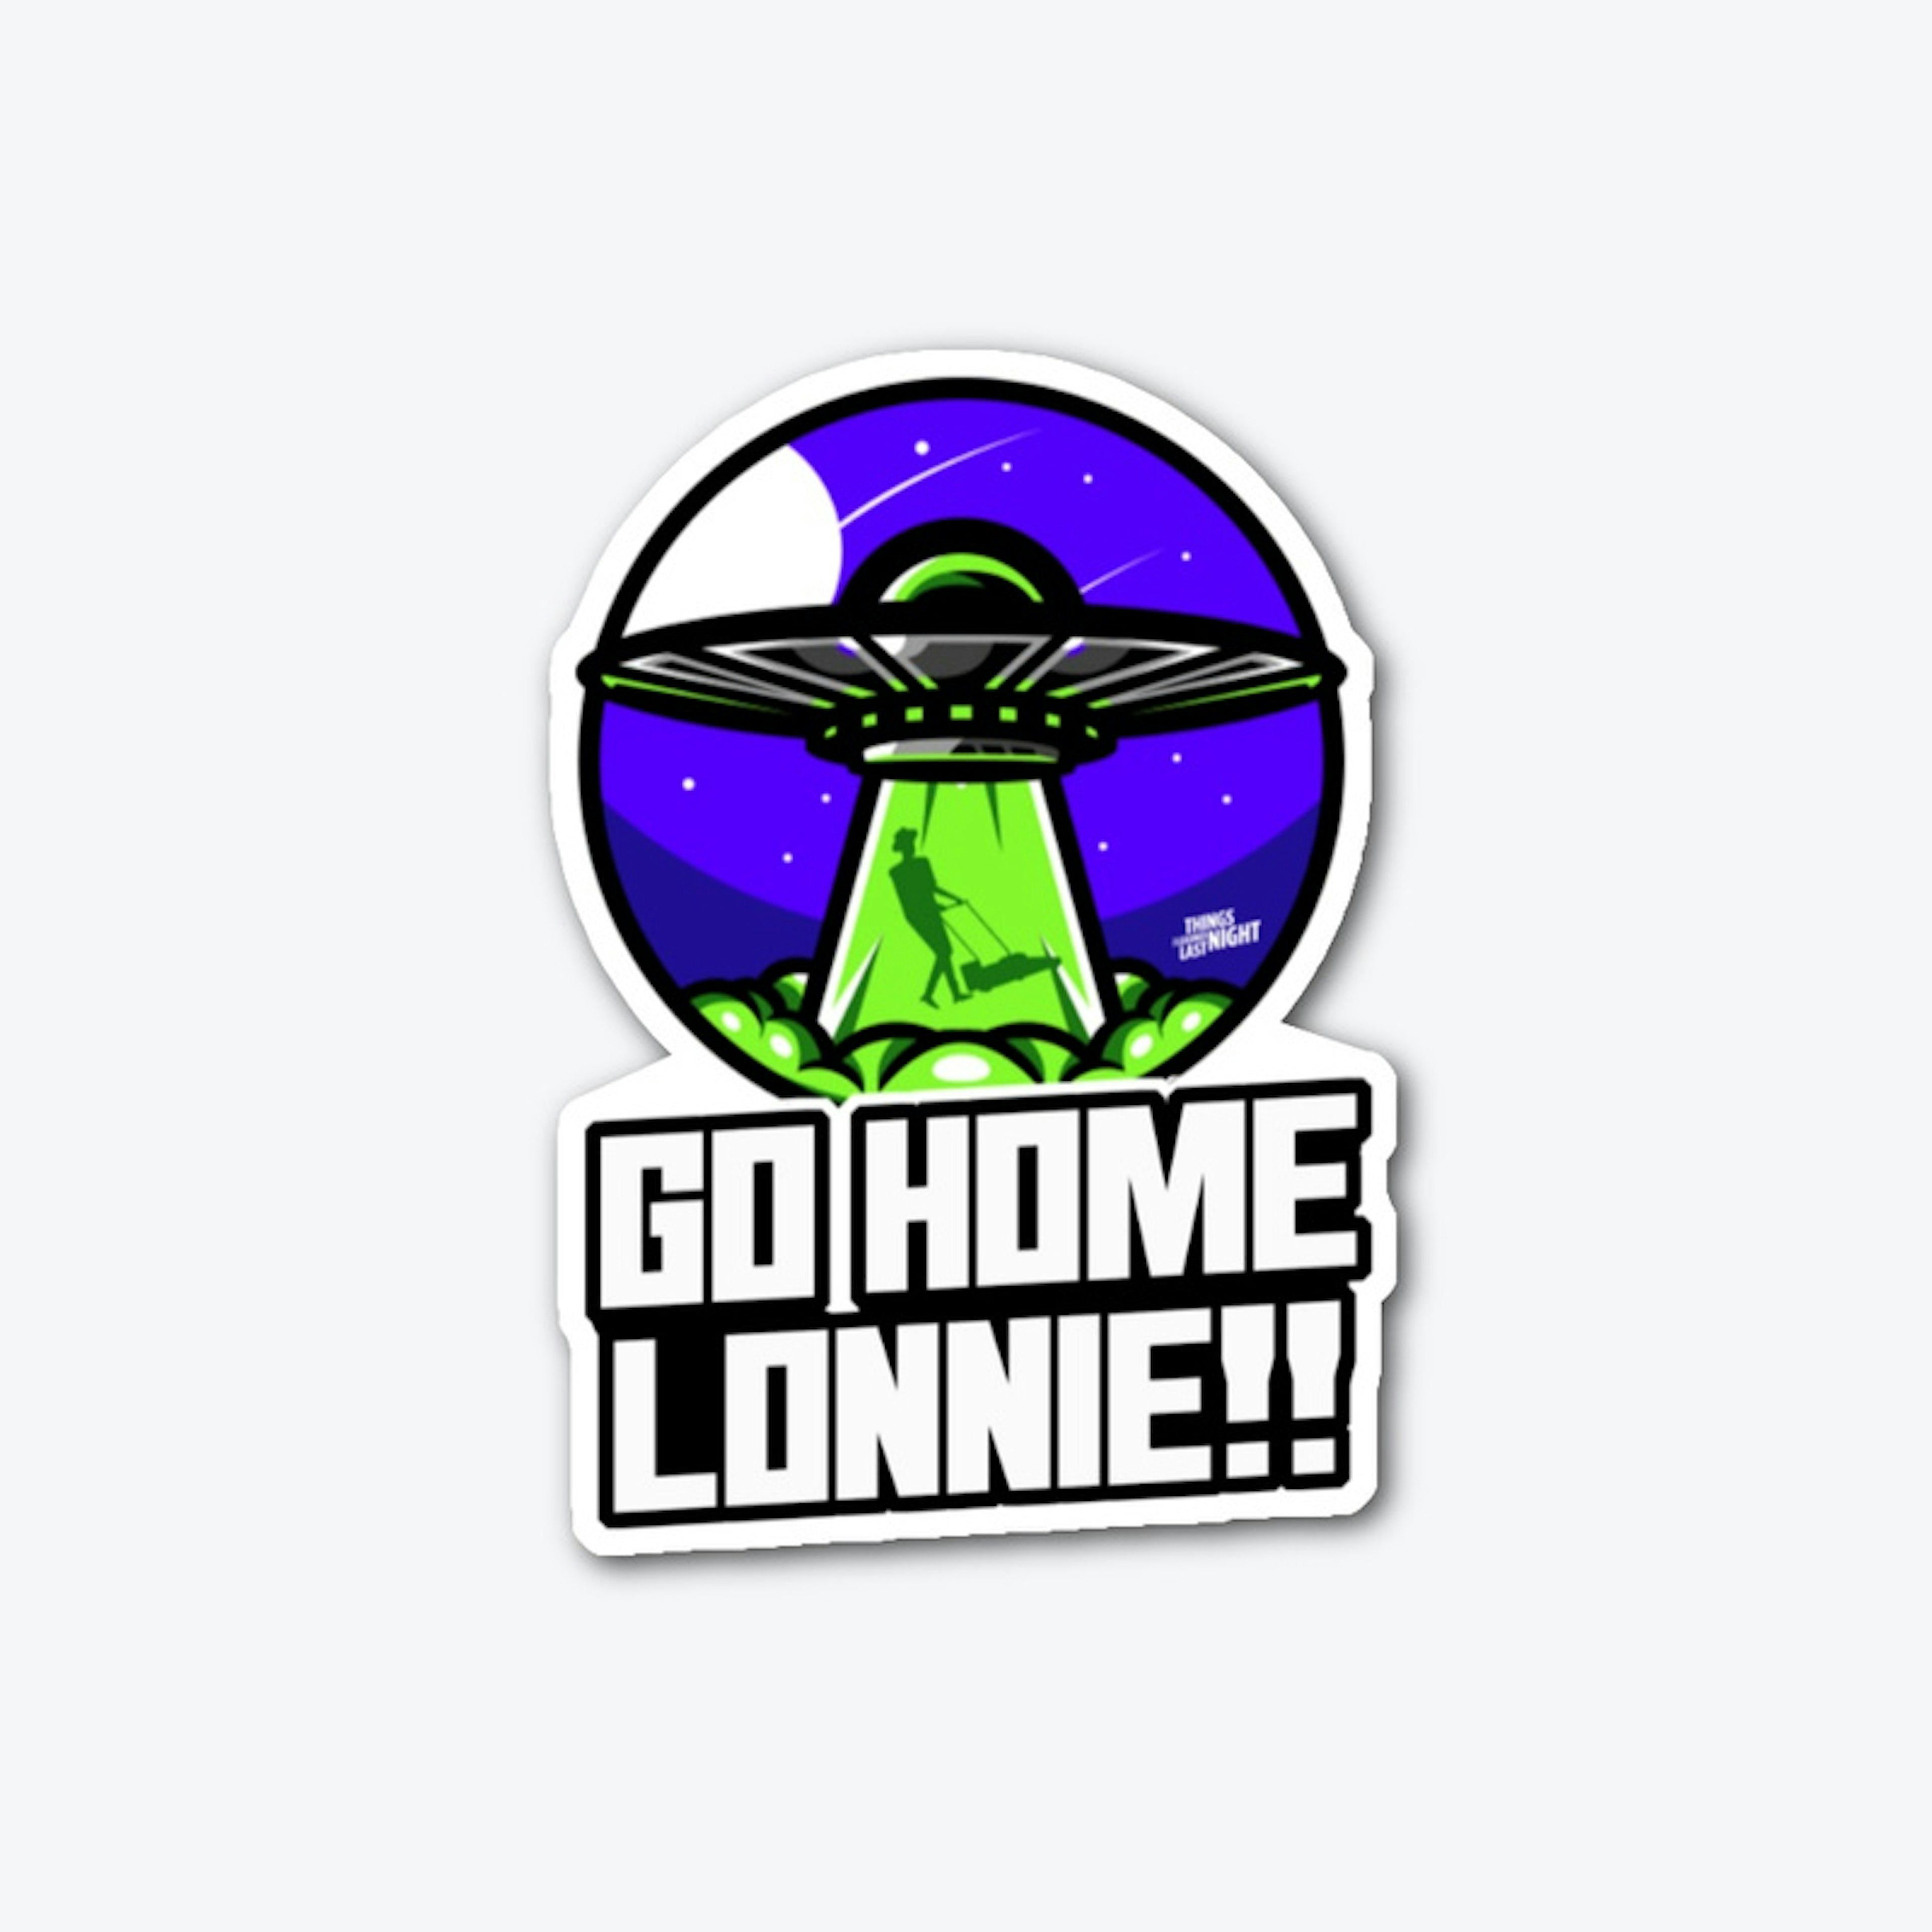 Go Home Lonnie